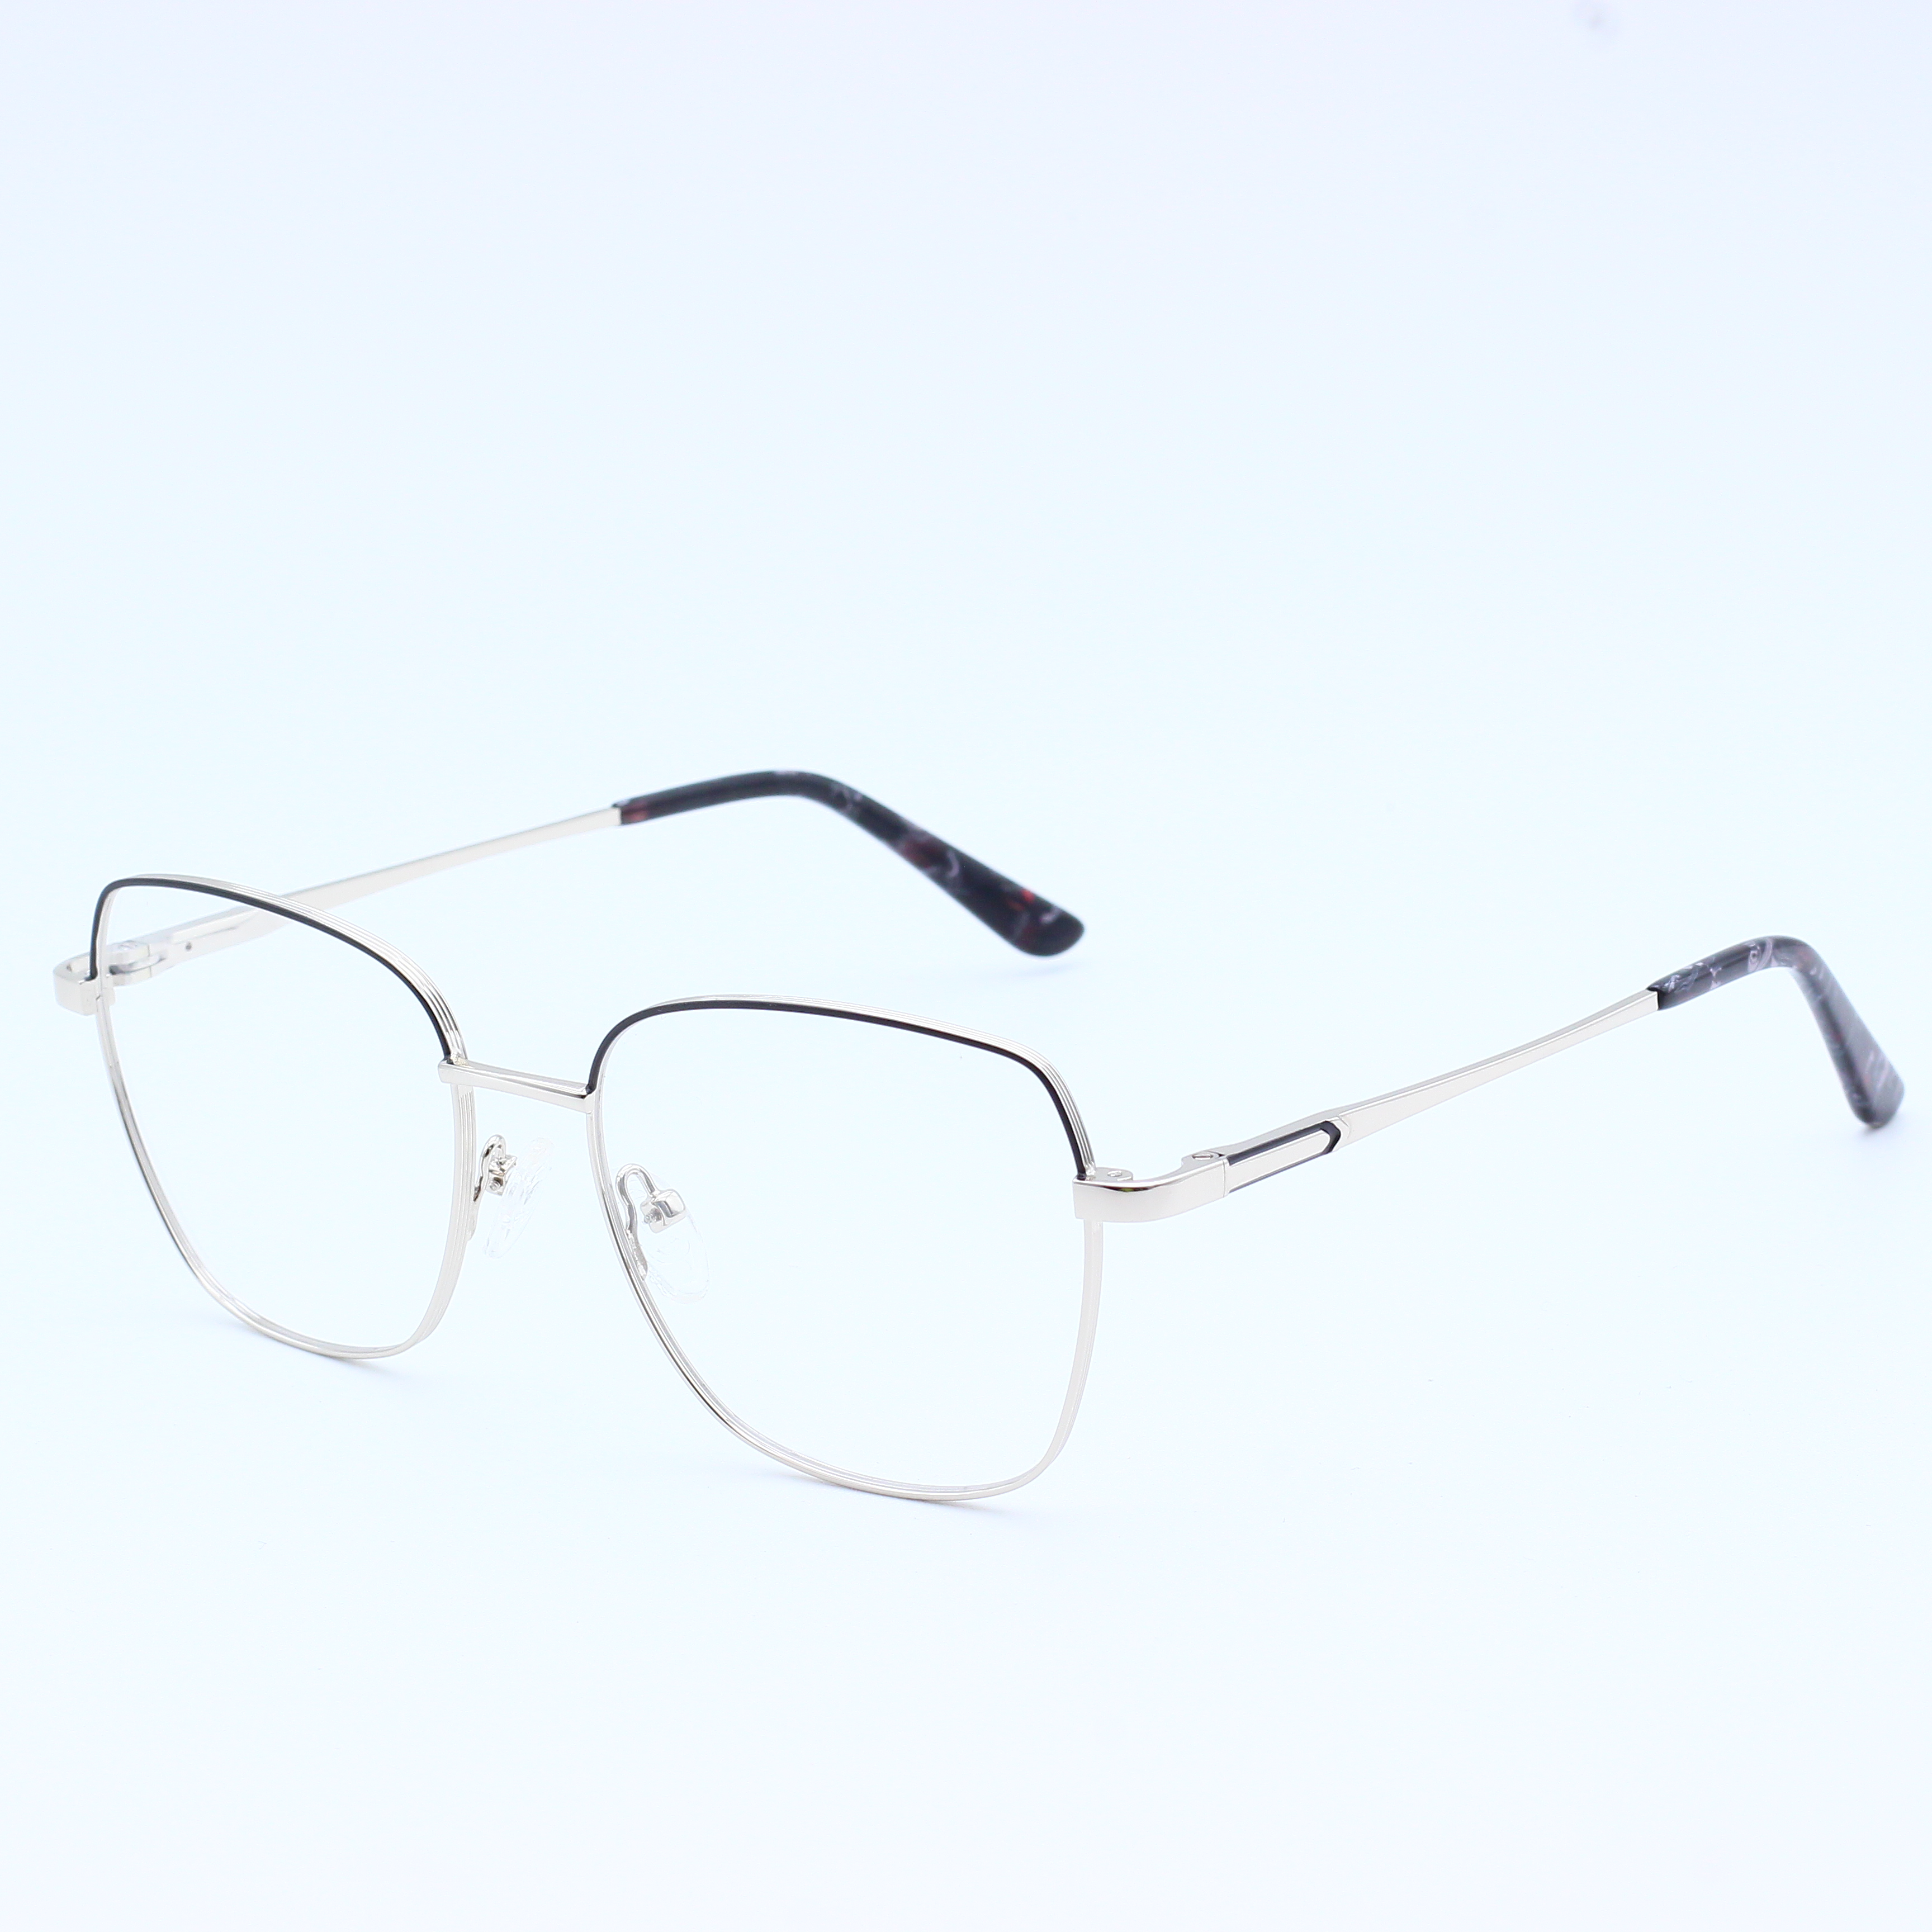 Best selling combine metal eyeglasses frames (11)